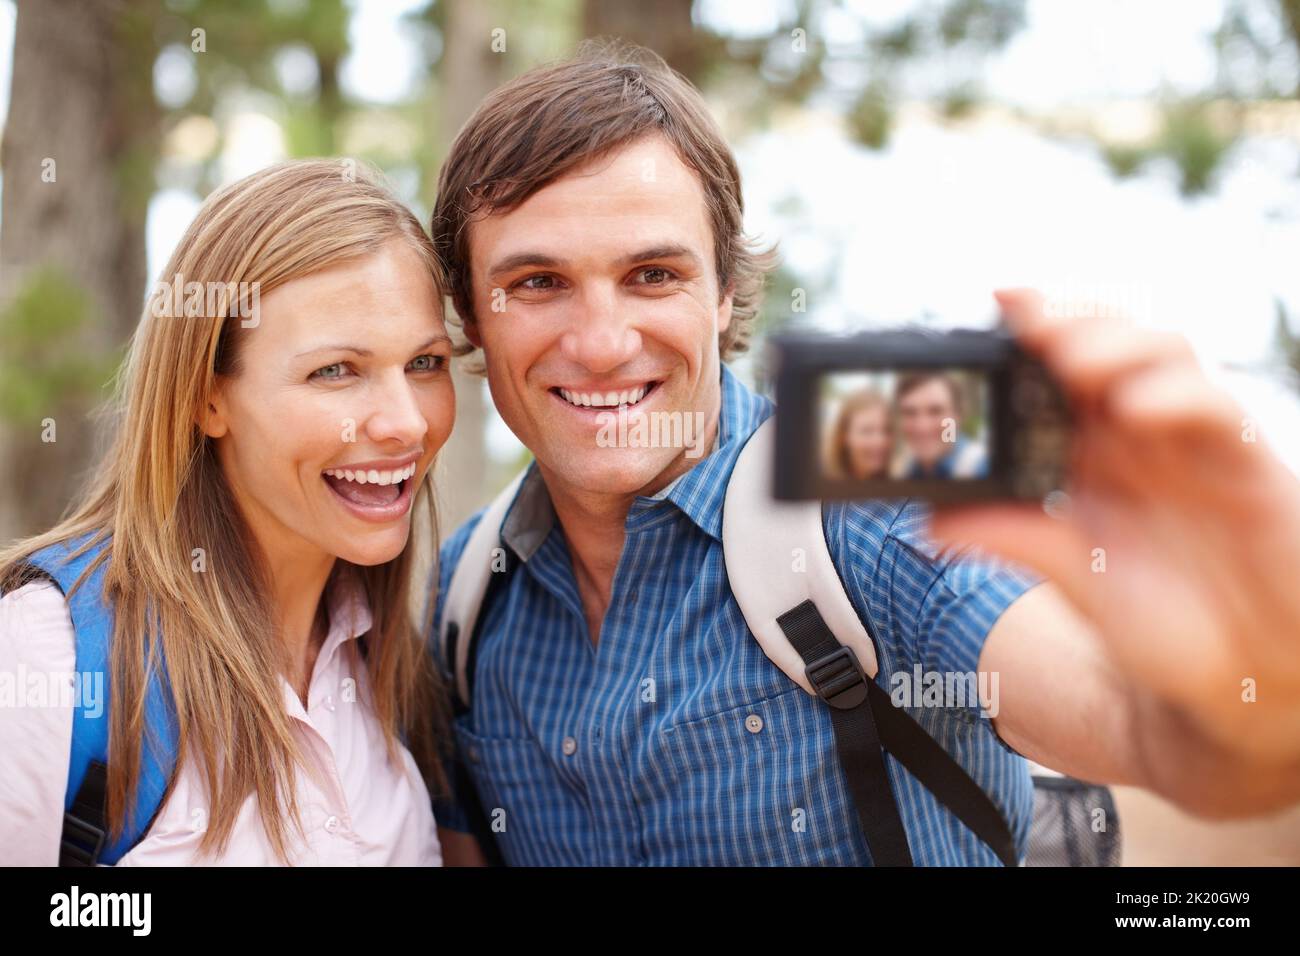 Selbstporträt. Paar mit Rucksack, der auf die Kamera schaut und lächelt, während ein Mann auf ein Foto klickt. Stockfoto